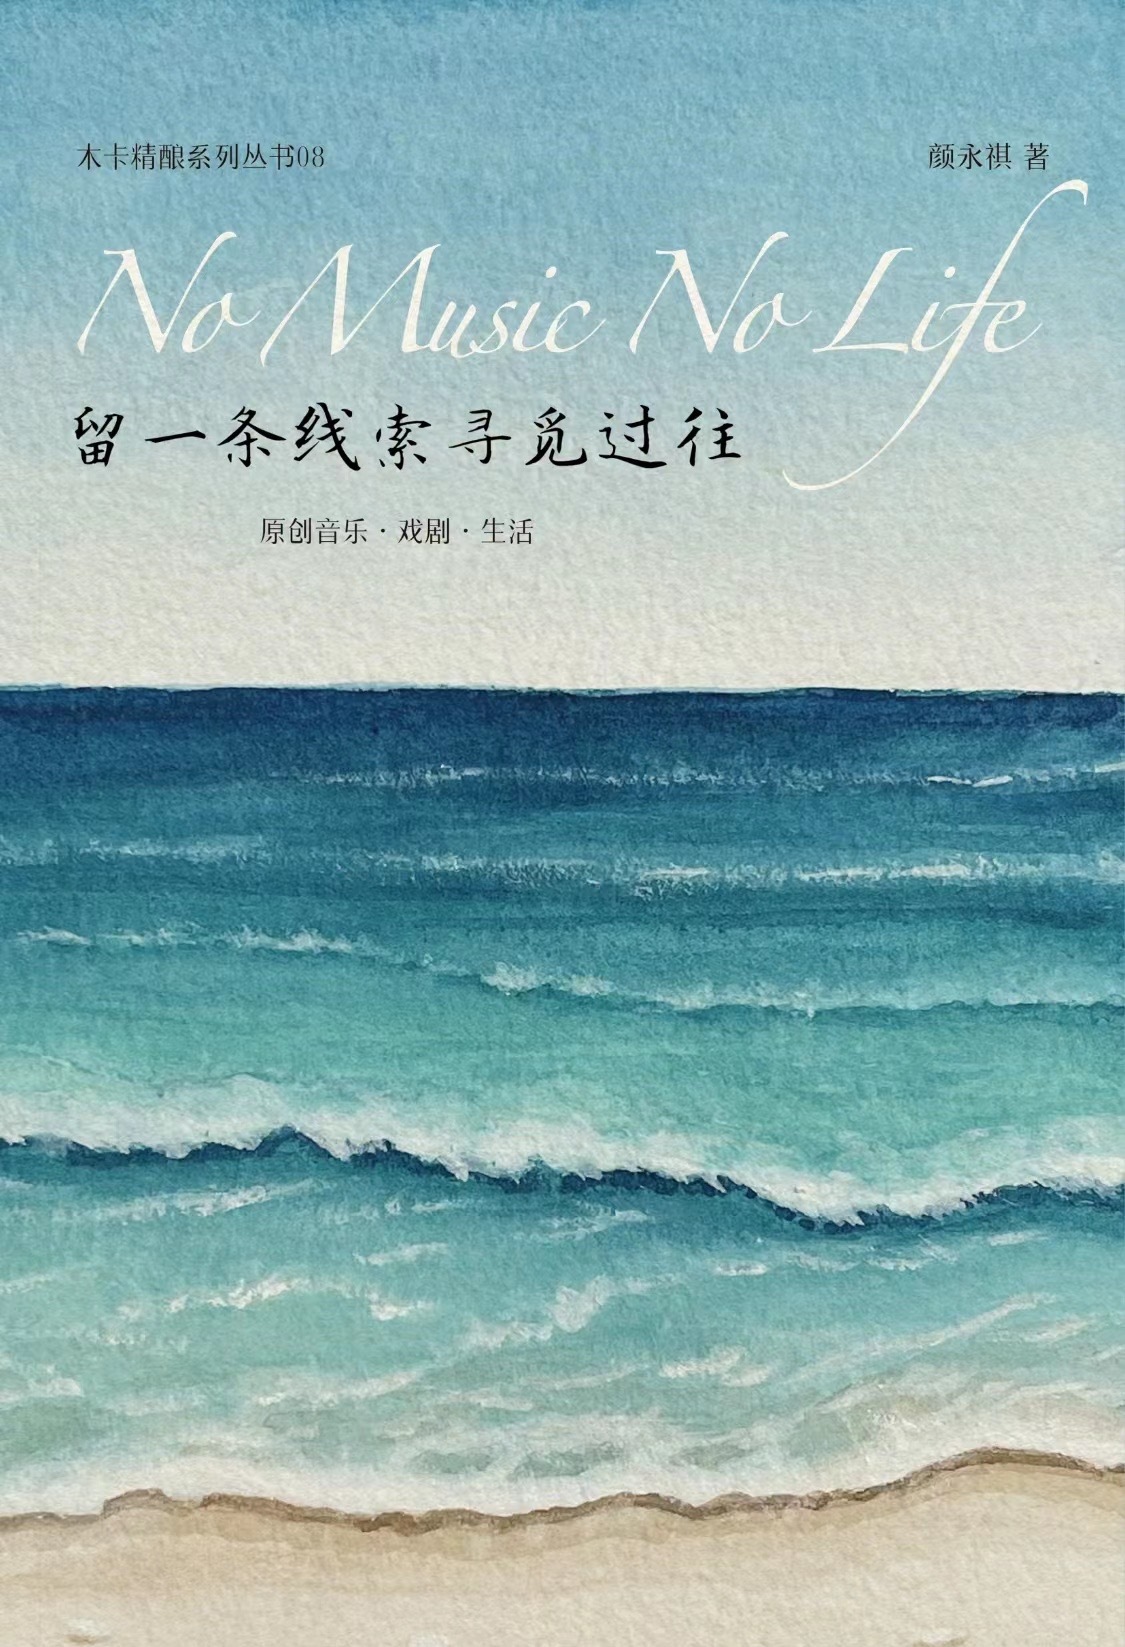 留一条线索寻觅过往 No Music No Life